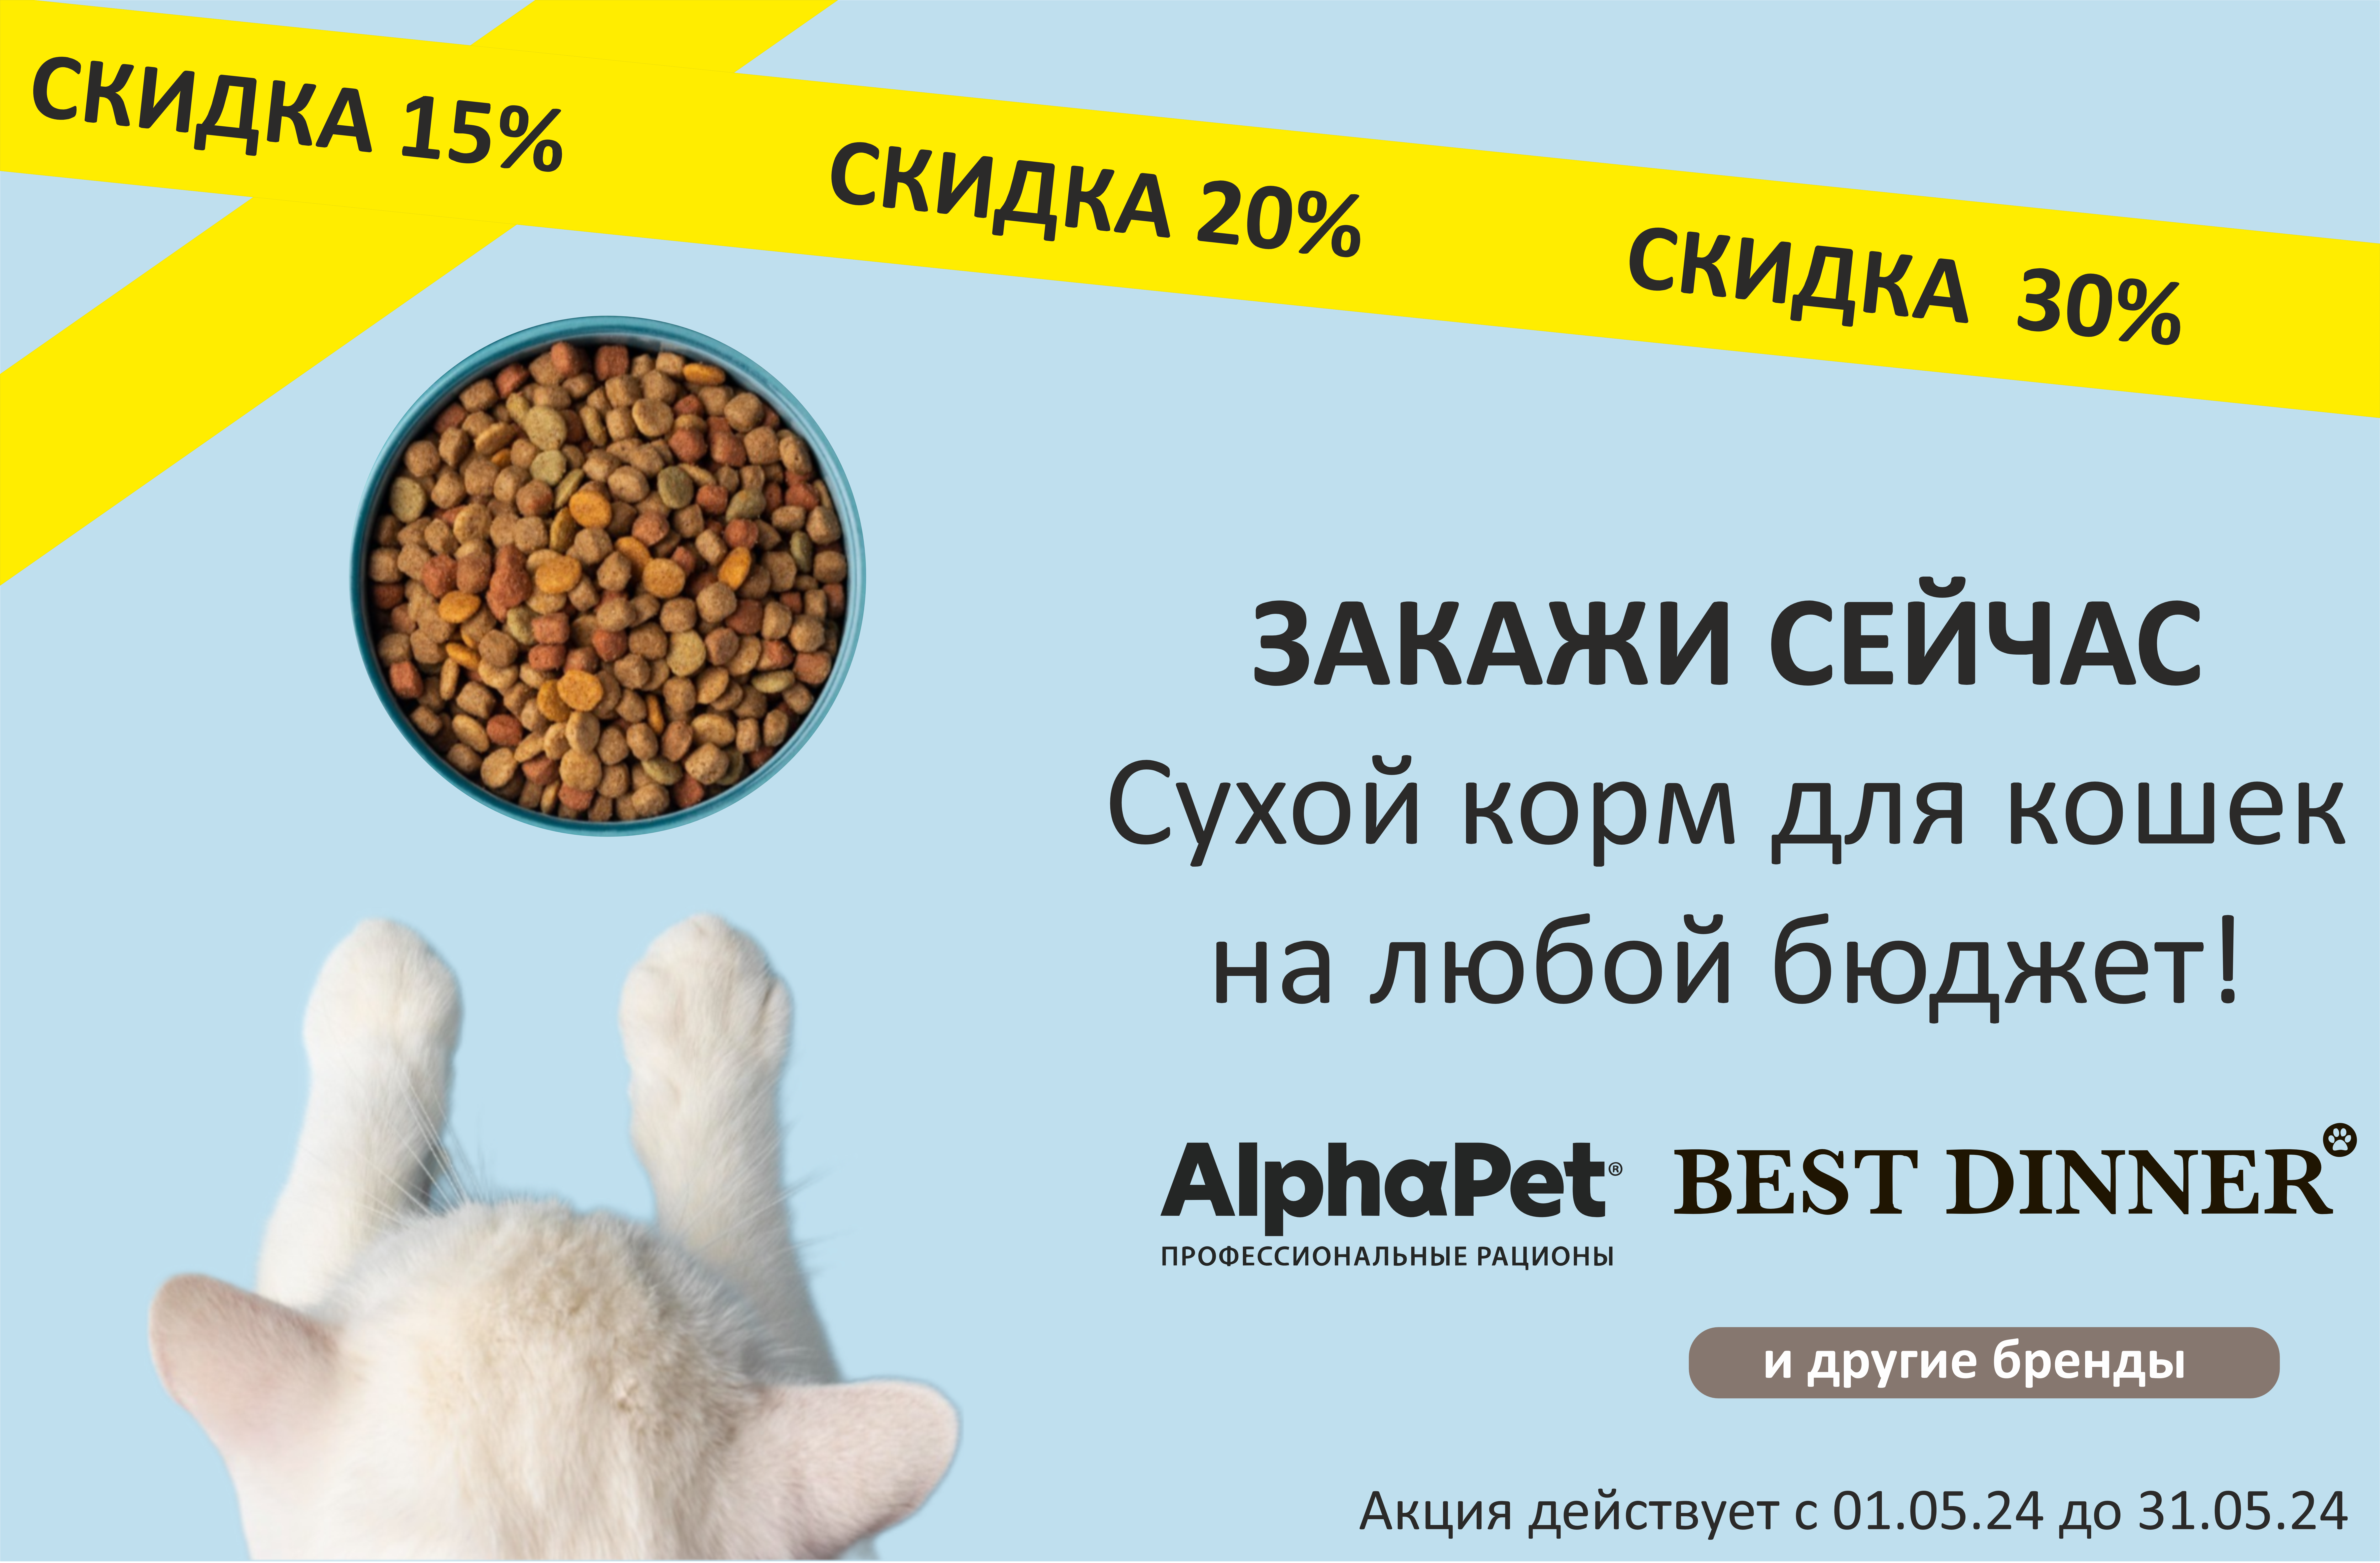 Сухой корм для кошек со скидкой до 30%